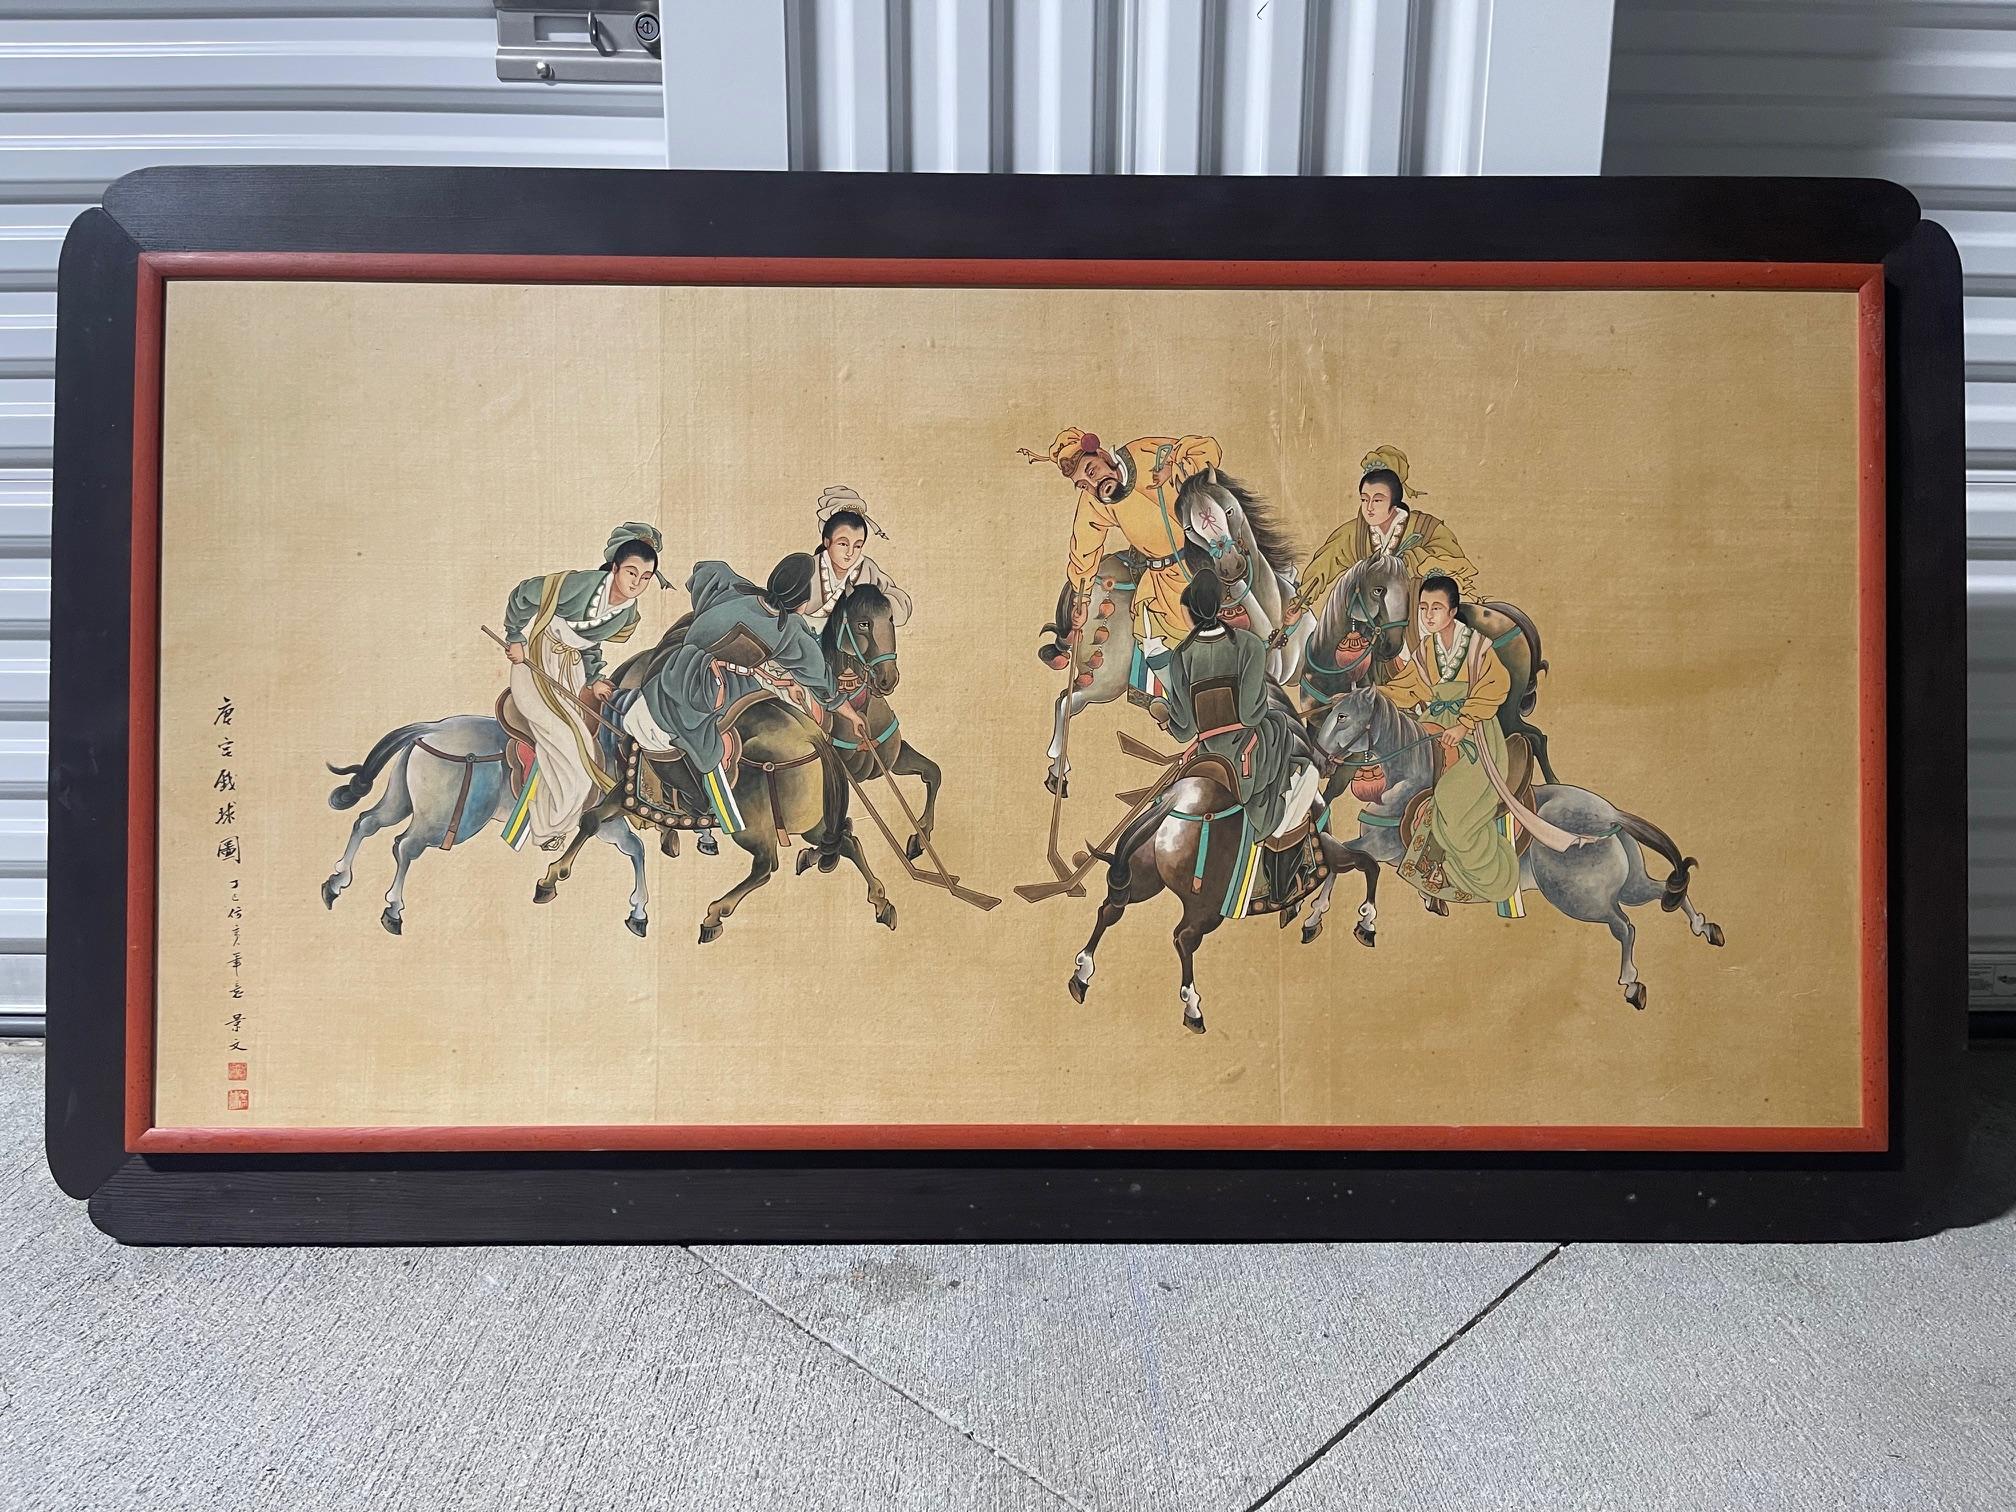 Chinesische Malerei von Reitern beim Spiel mit Stöcken, Ende 19. Jahrhundert